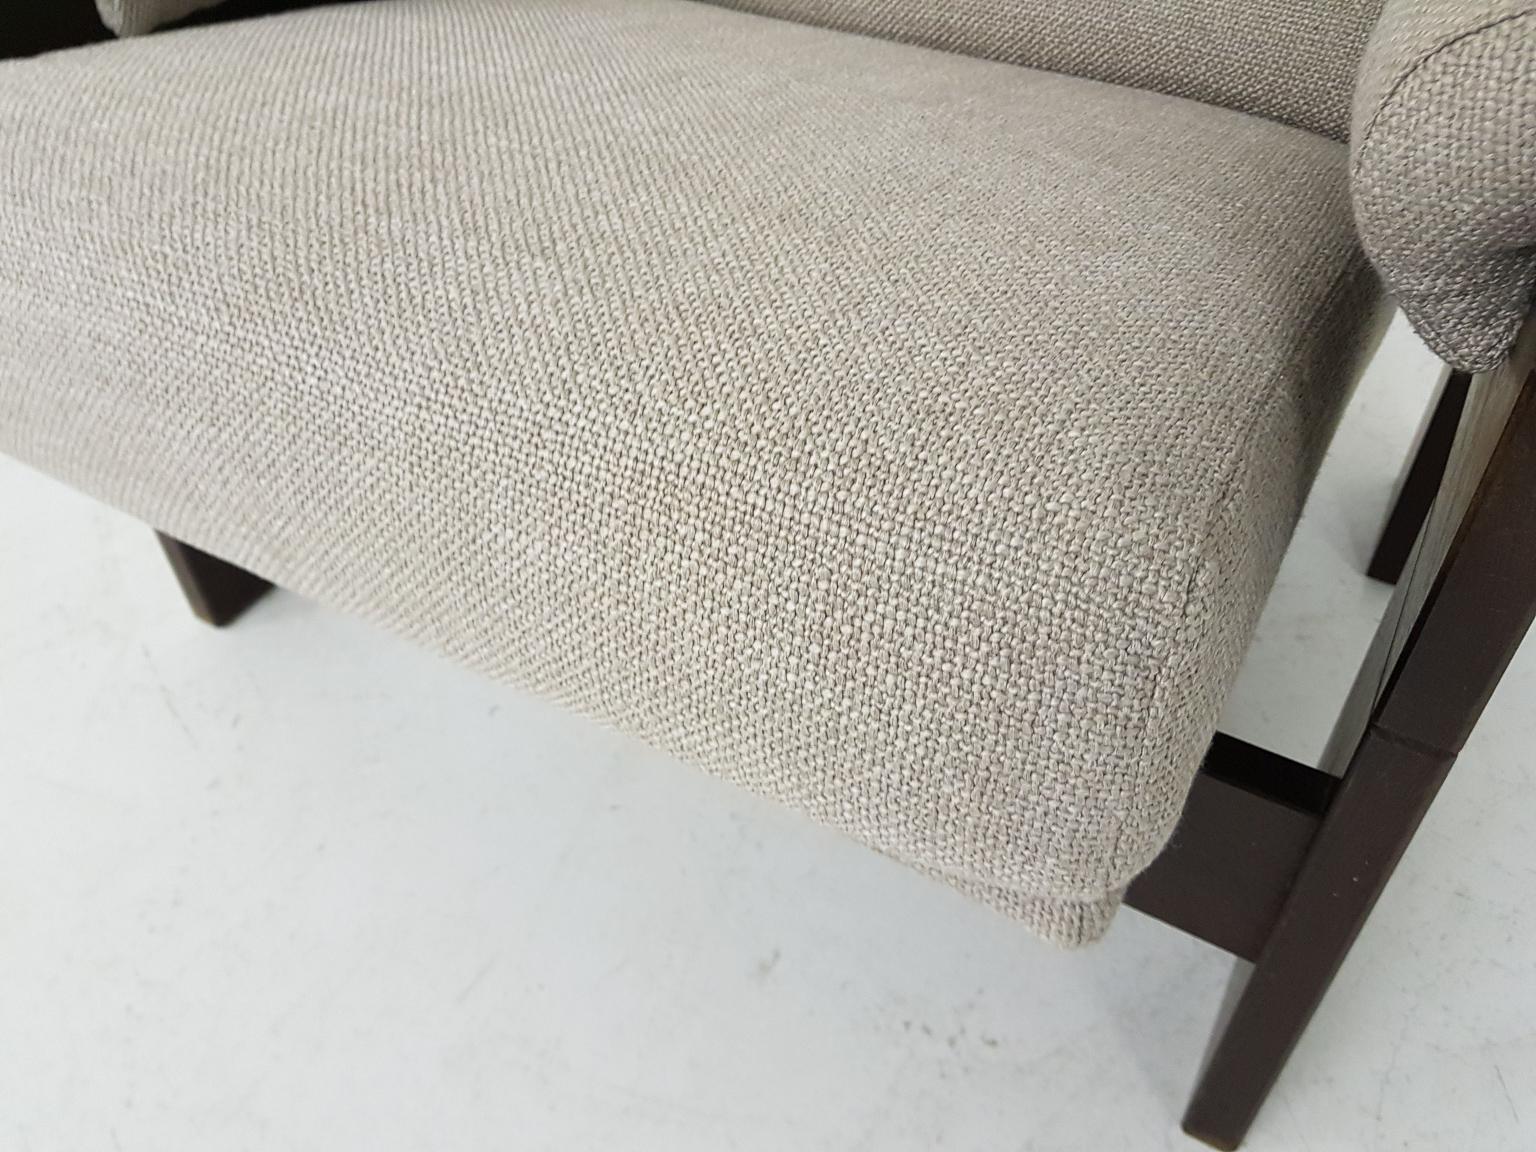 Mid-Century Modern Martin Visser for ’t Spectrum Wool and Wenge Lounge Chair sz74, Dutch Modern